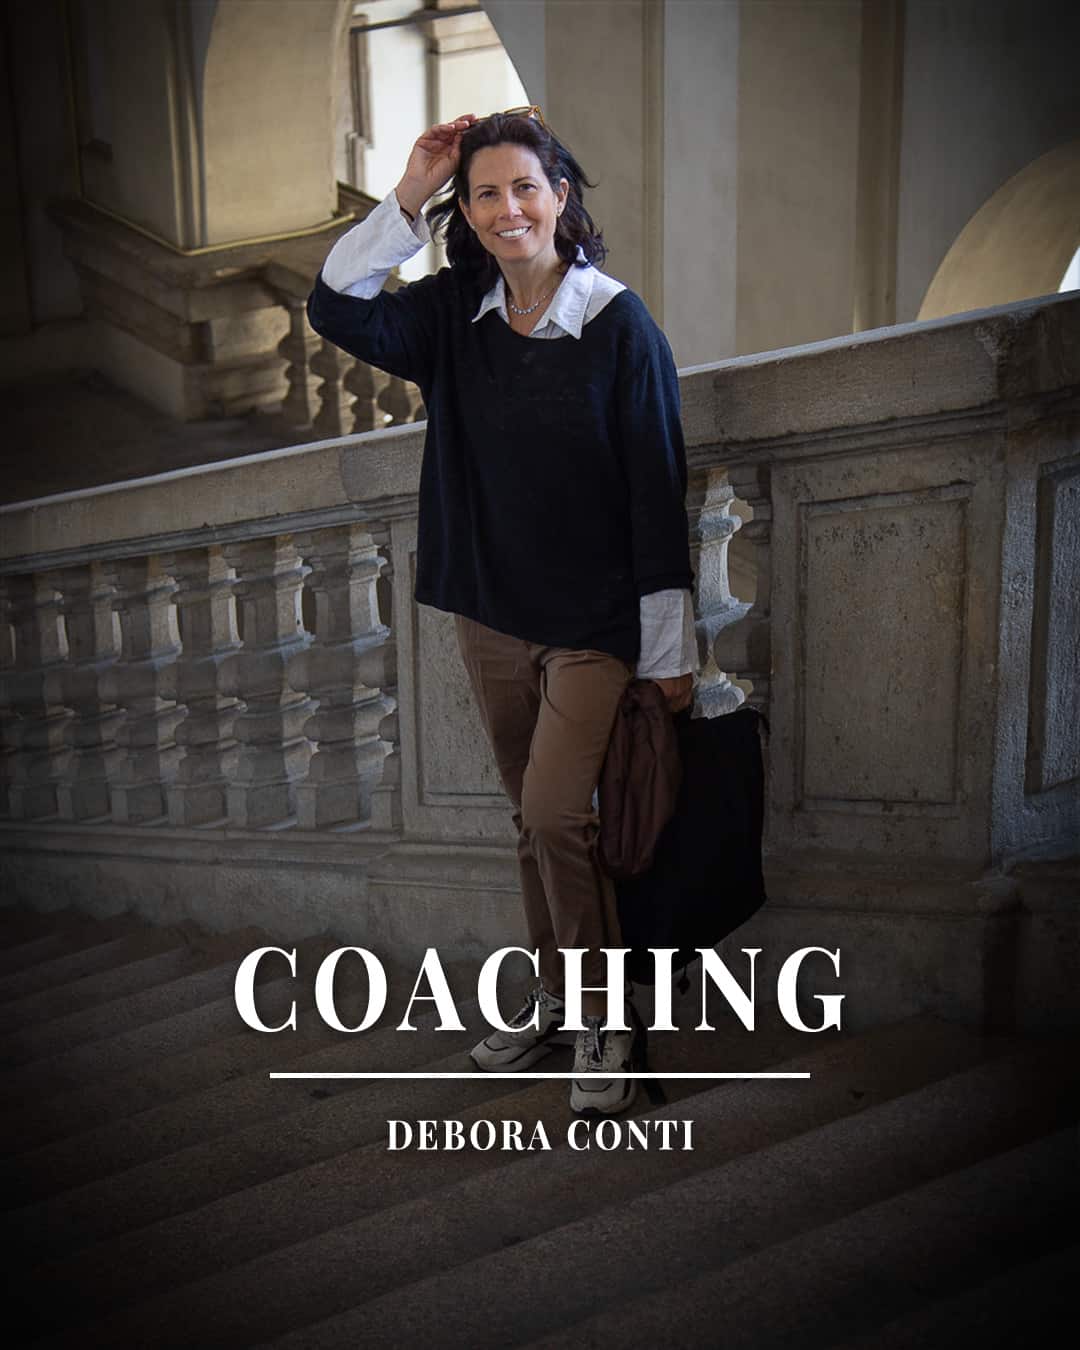 Debora Conti è autrice best seller di libri di crescita personale, Life coach professionista dal 2005, Trainer di PNL per la Society of NLP e laureata in psicologia. È docente di coaching per CCA Italia per migliorare i tuoi incontri di COACHING. e continua a formarsi con Master di livello internazionale.